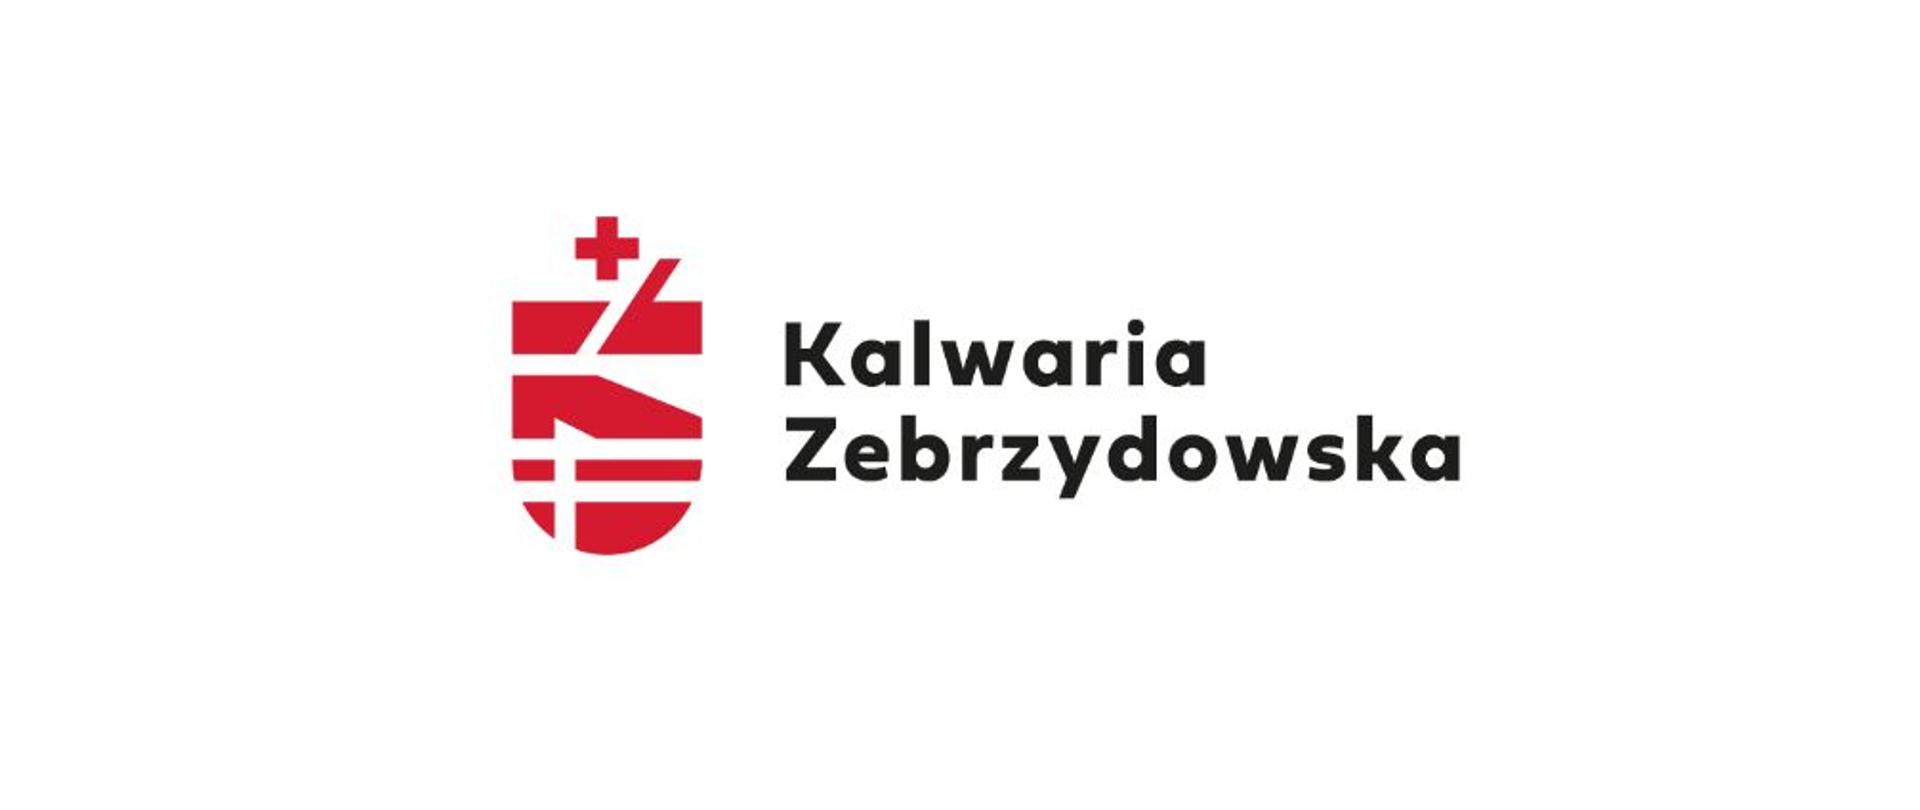 Nowe logo i identyfikacja Kalwarii Zebrzydowskiej